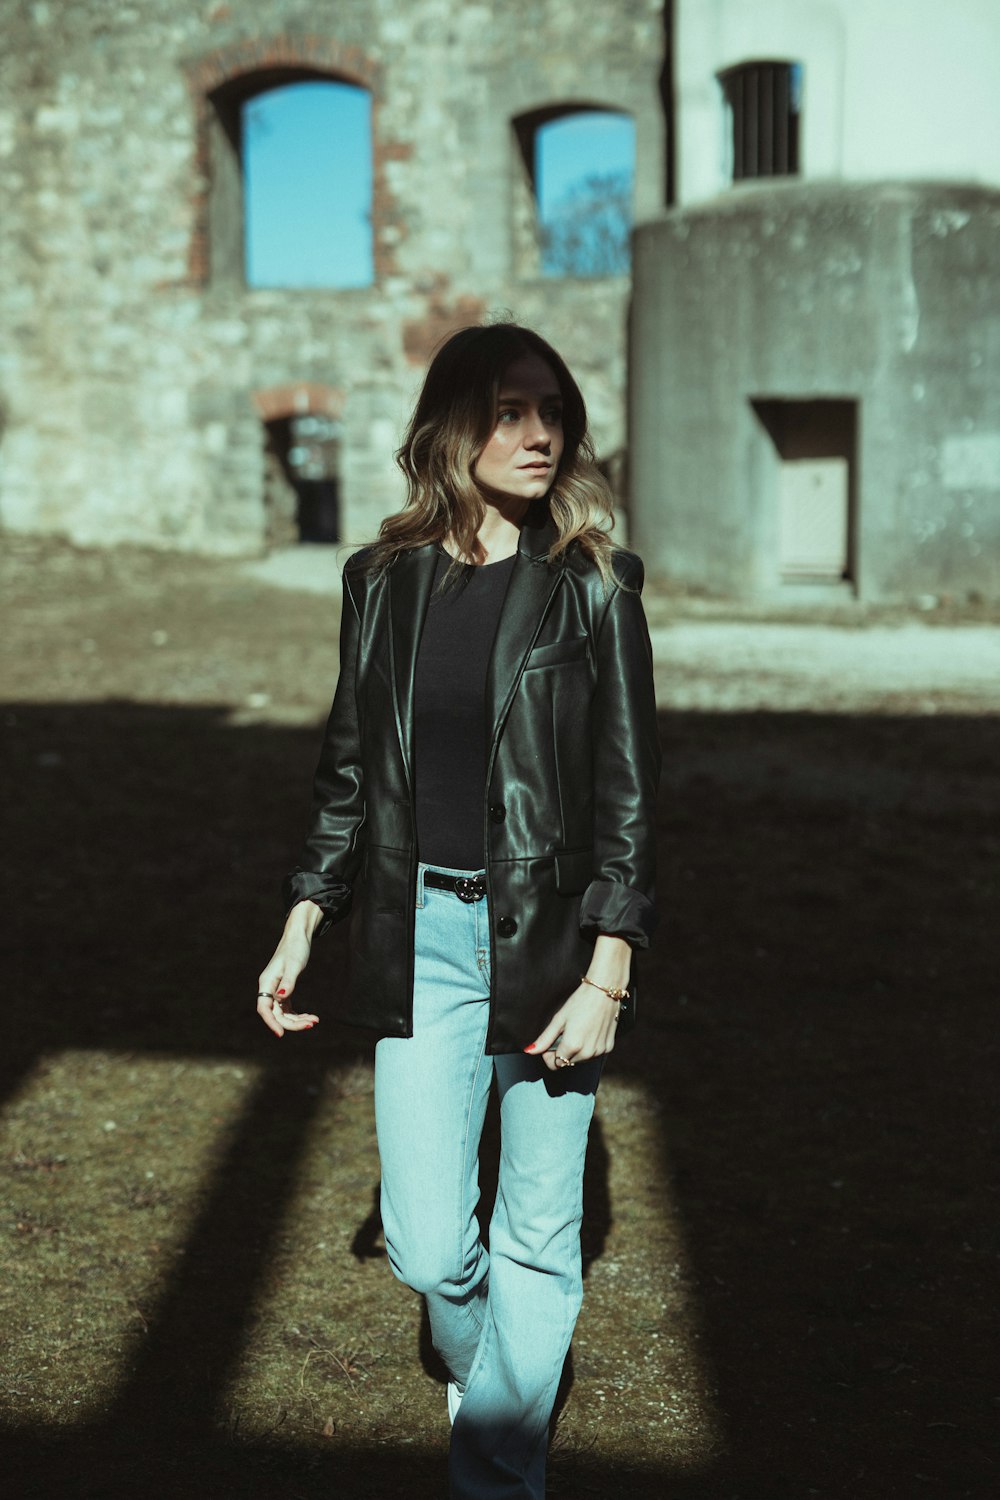 Frau in schwarzer Lederjacke und blauer Jeans tagsüber auf grauem Betonboden